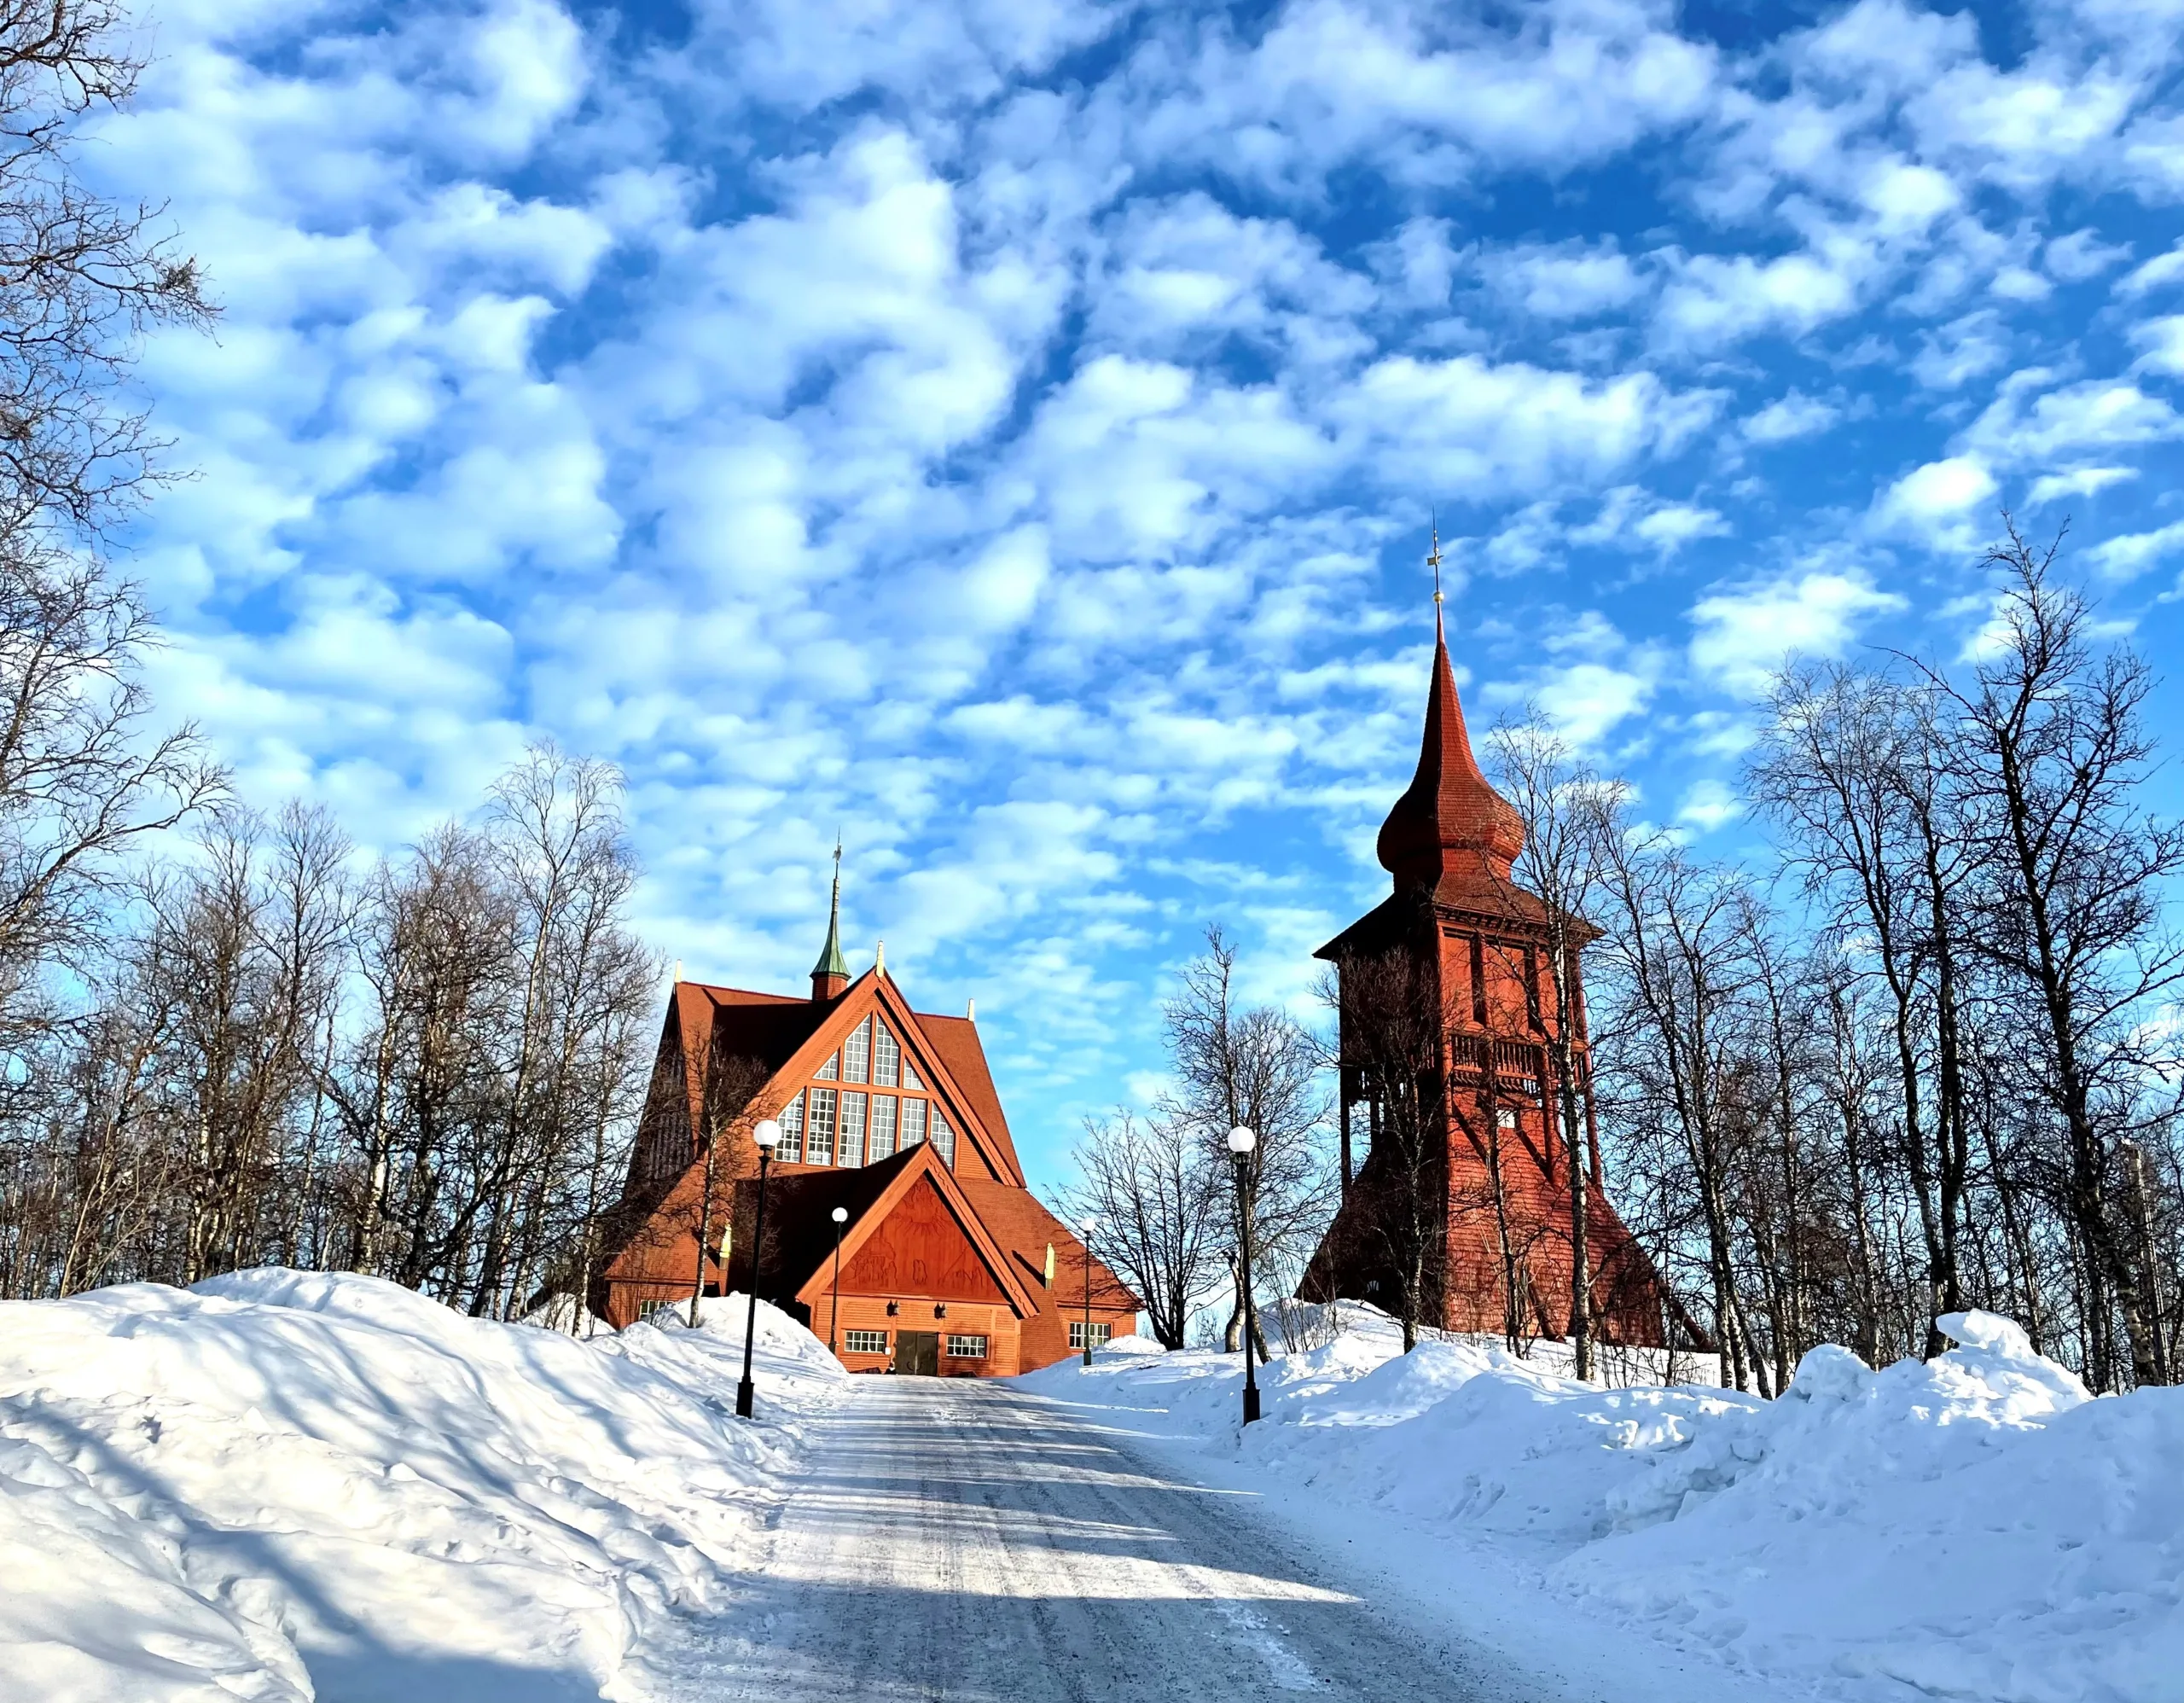 Kiruna kyrka